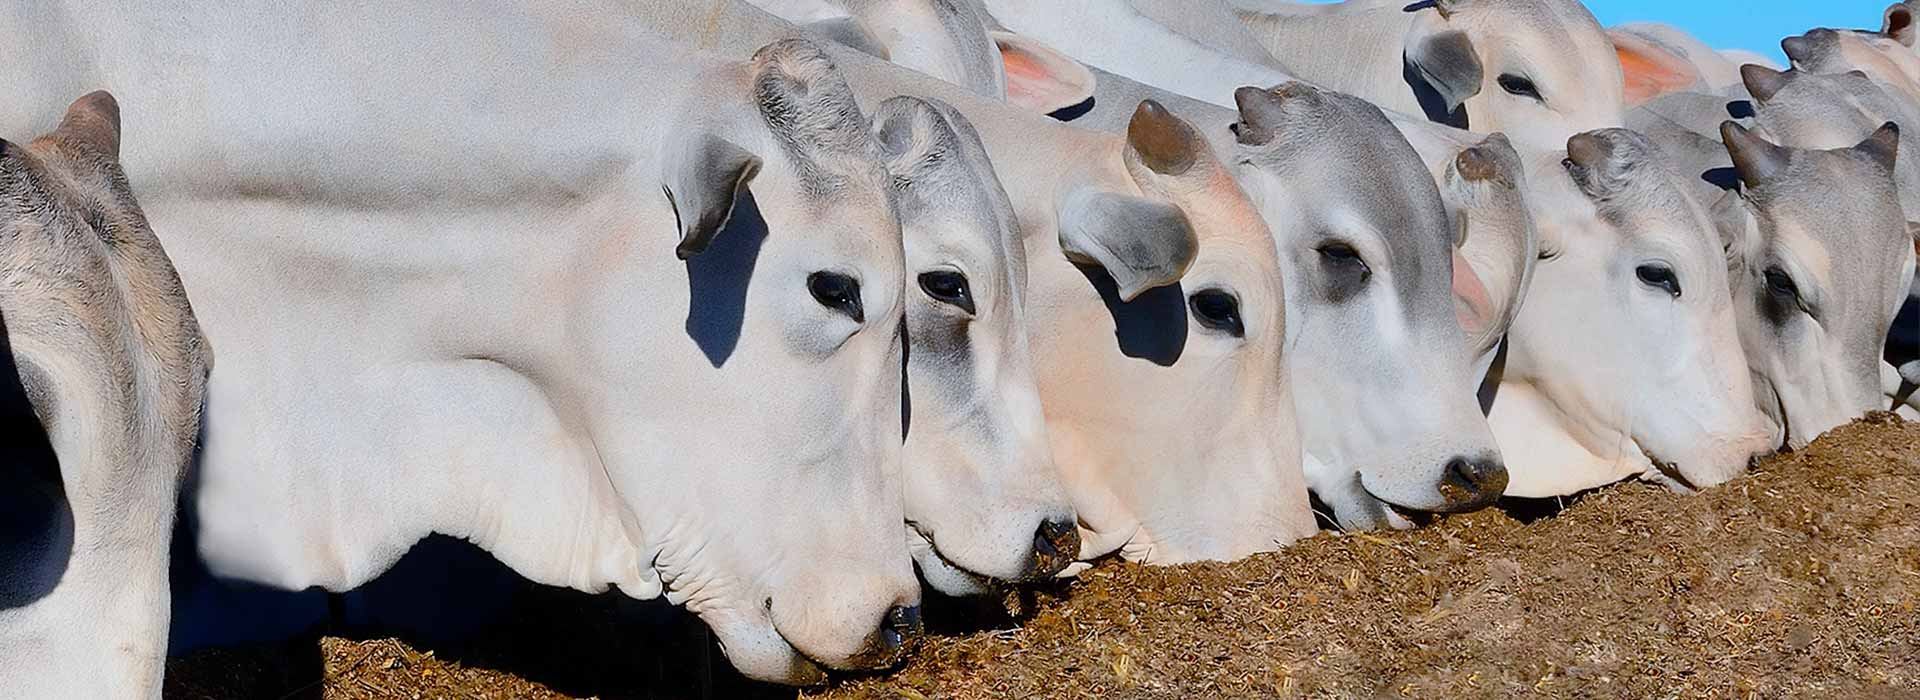 Alltech nutrição animal para gado de corte